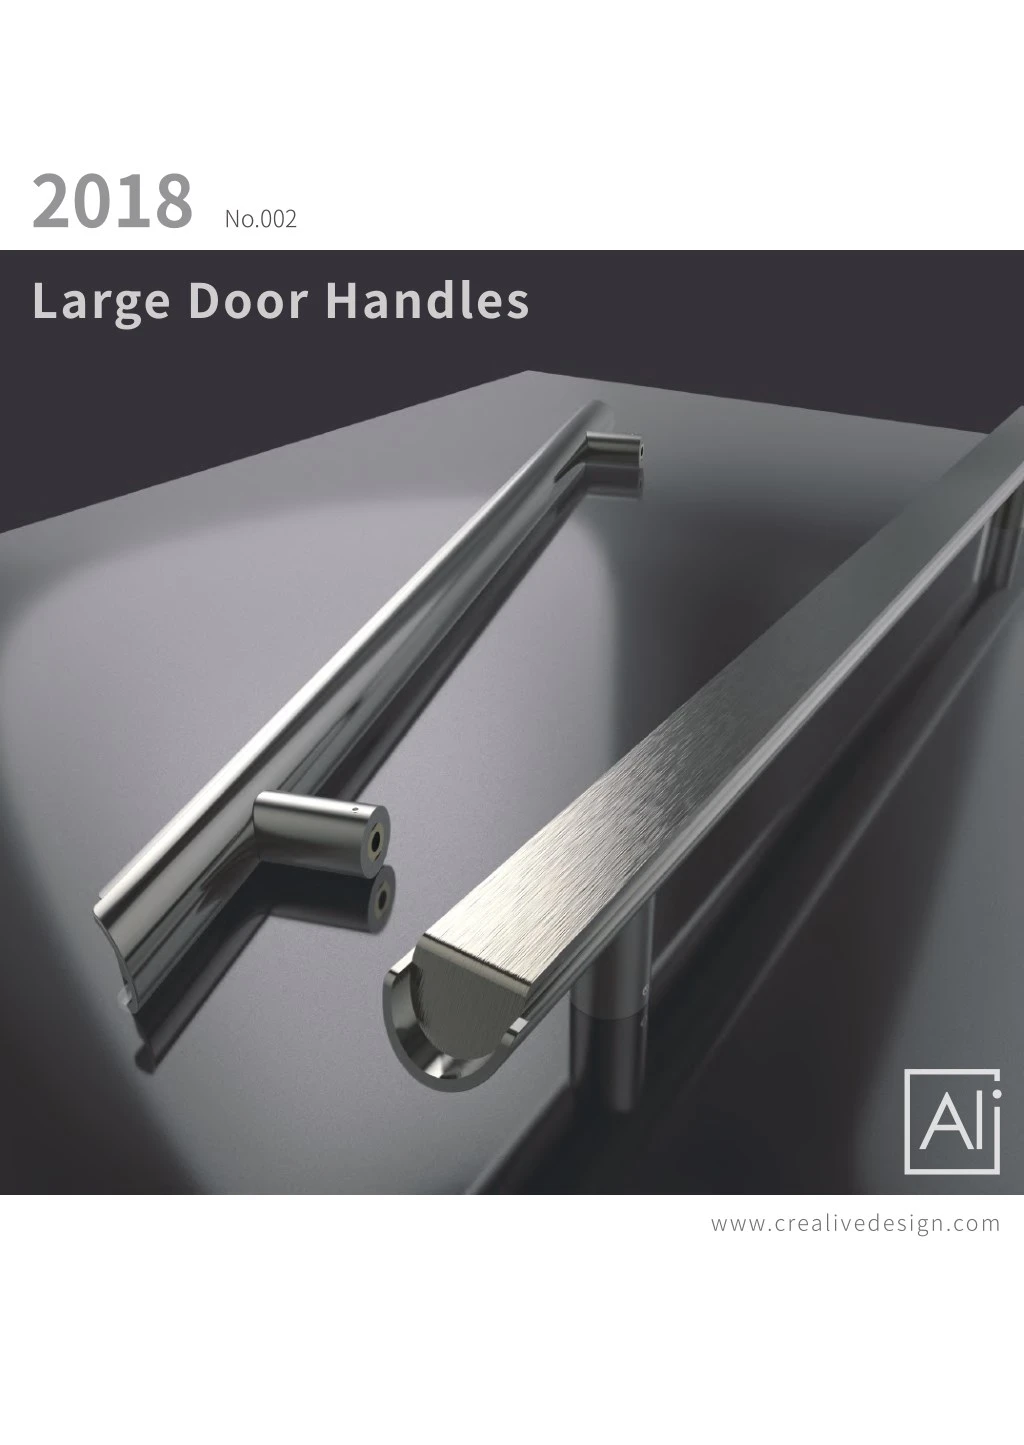 2018 large door handles